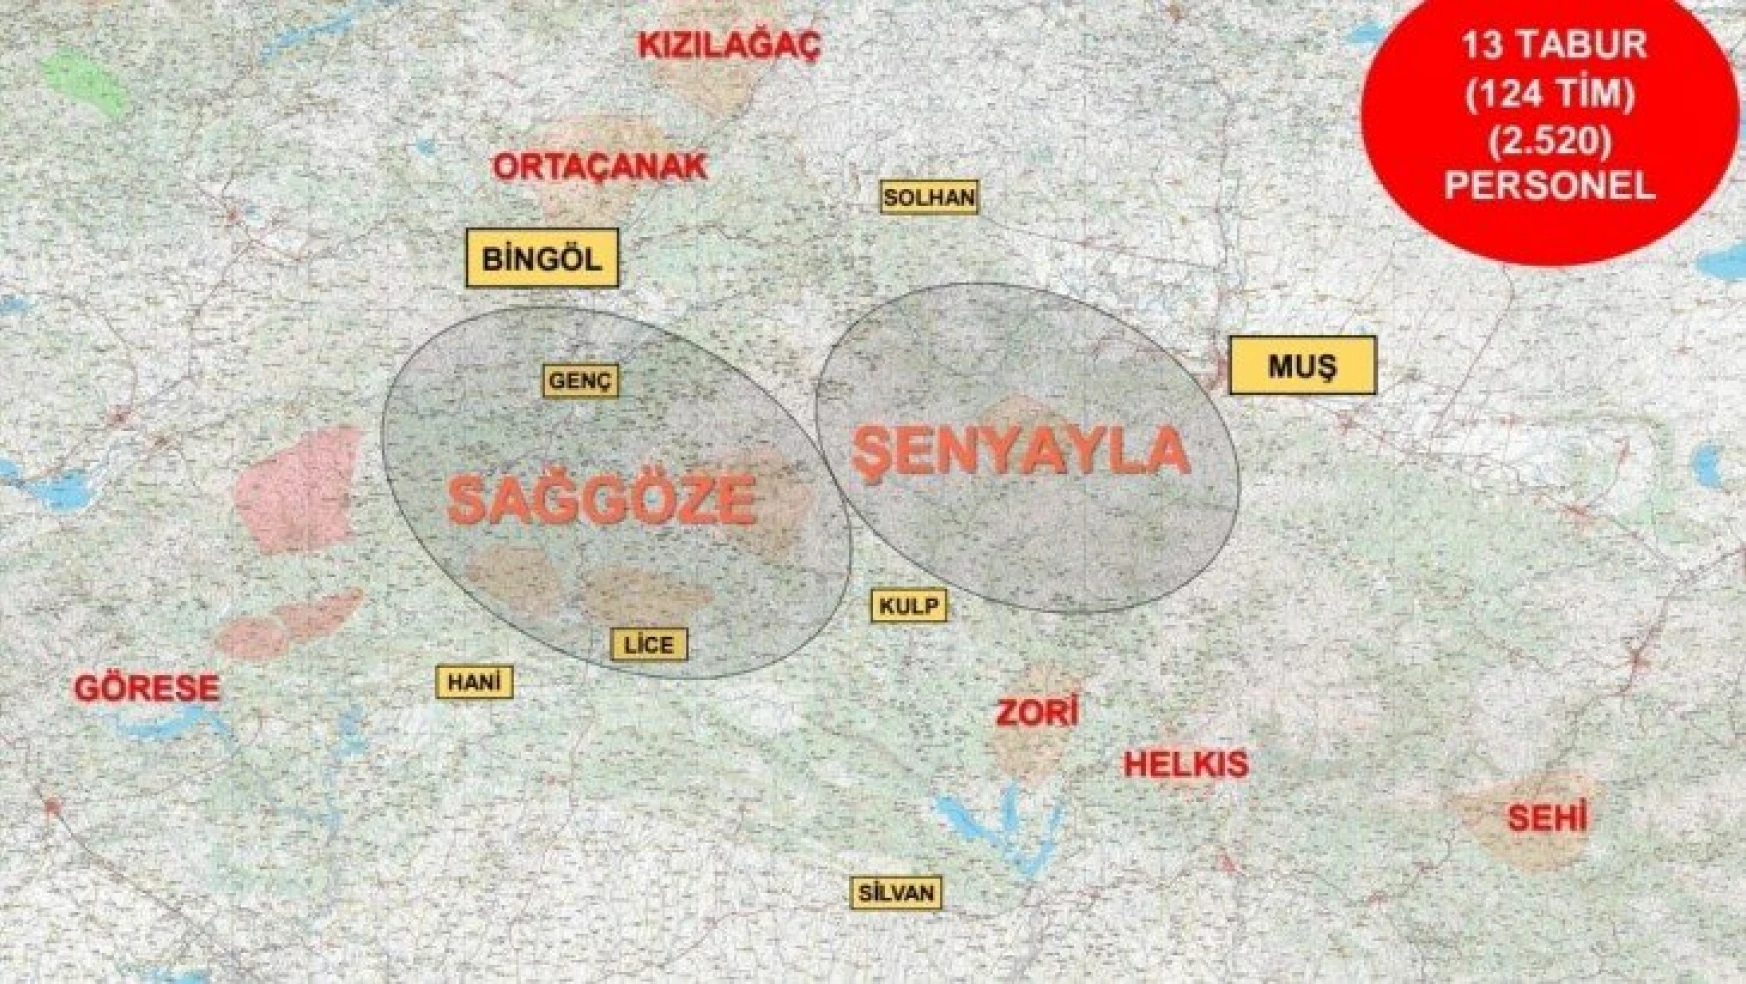 Diyarbakır-Bingöl-Muş İllerinde Eren Şenyayla-Sağgöze Operasyonu Başlatıldı